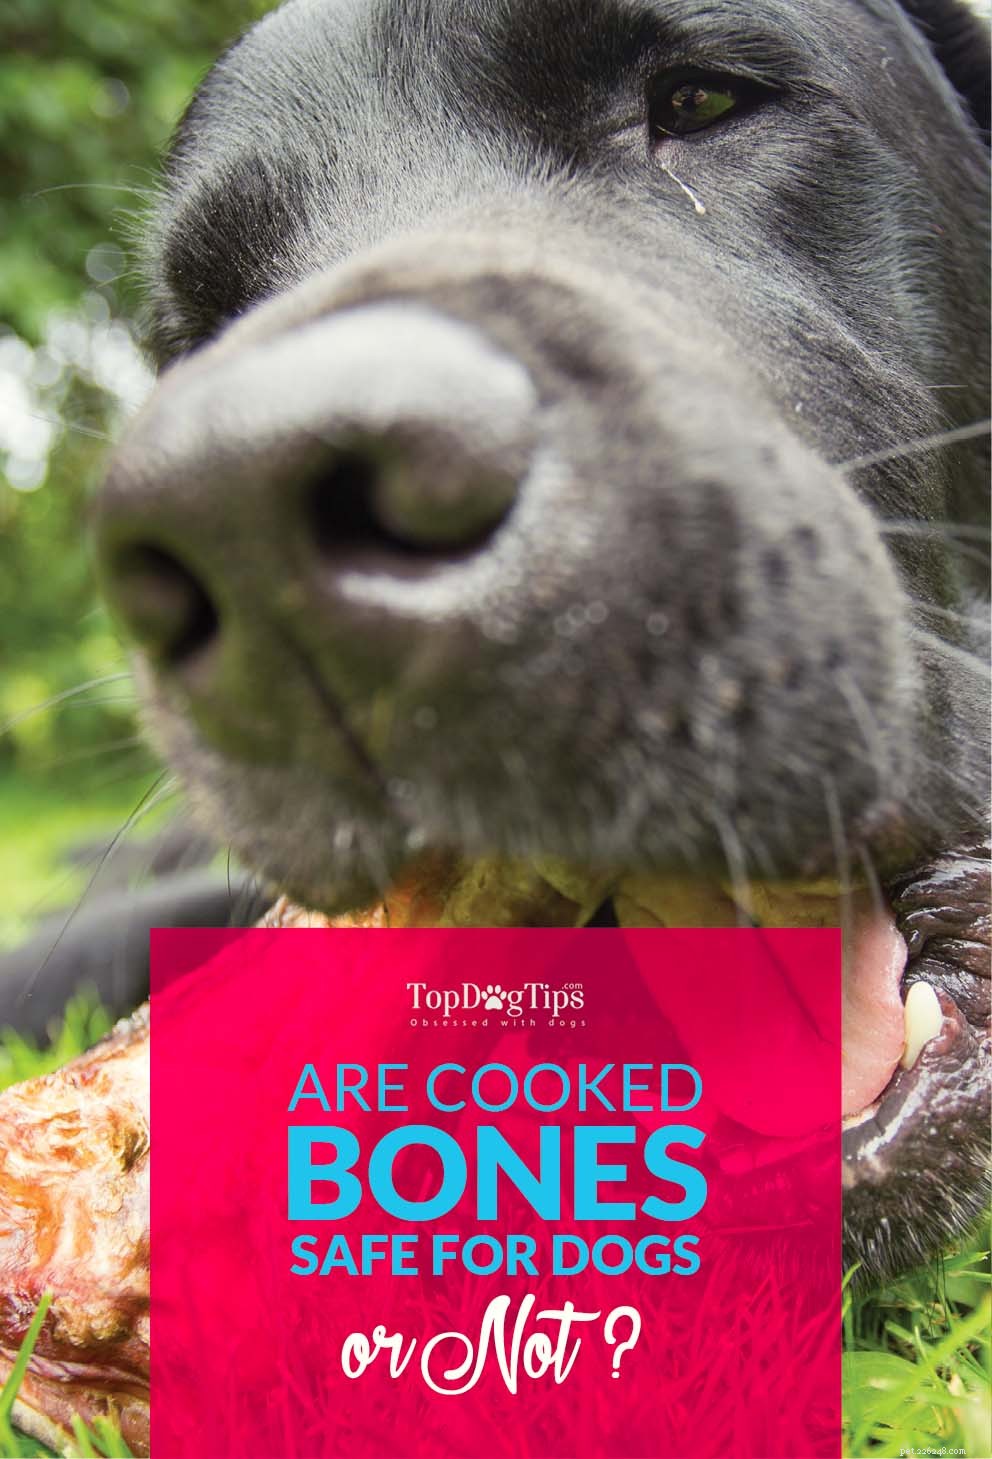 Приготовление костей для собак может быть не очень хорошей идеей